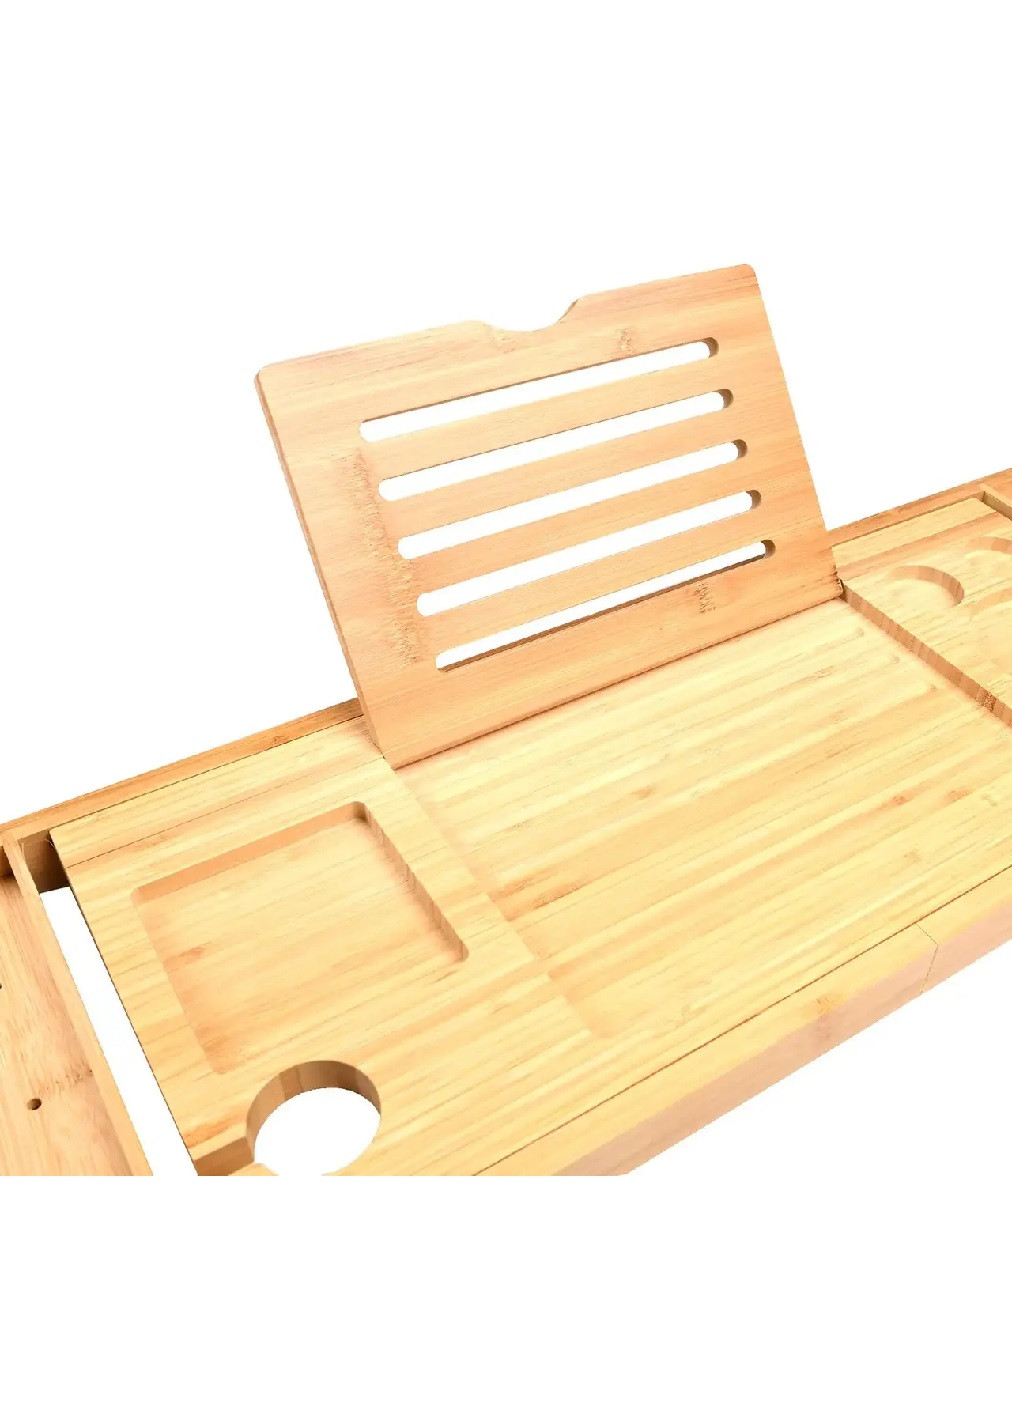 Поднос полка столик складной раздвижной деревянный бамбуковый для вещей асессуаров на ванну 75х23,5х3 см (475858-Prob) Unbranded (272782477)